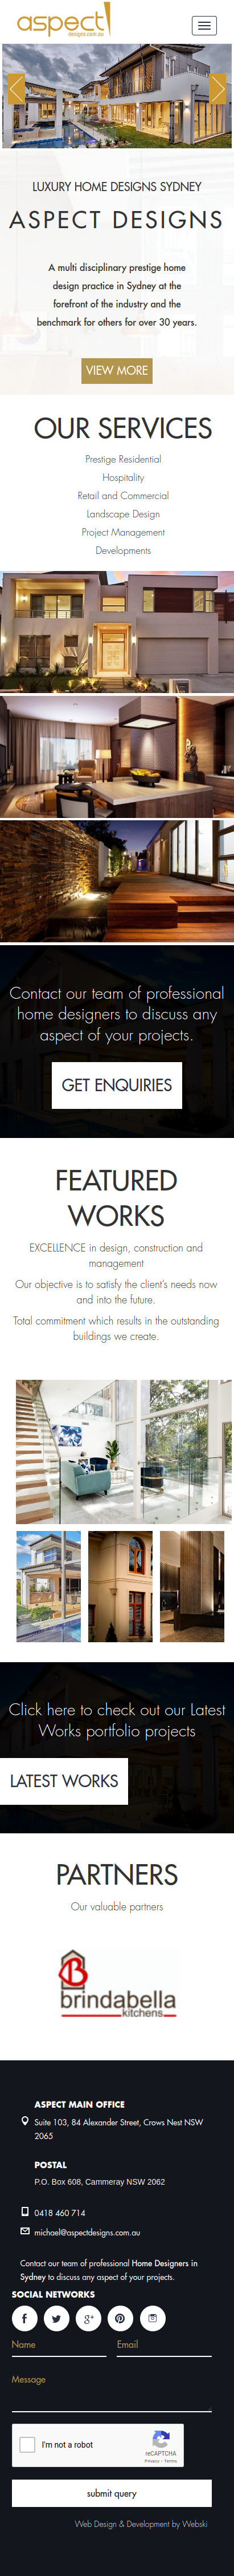 web desgin sydney luxury home designs